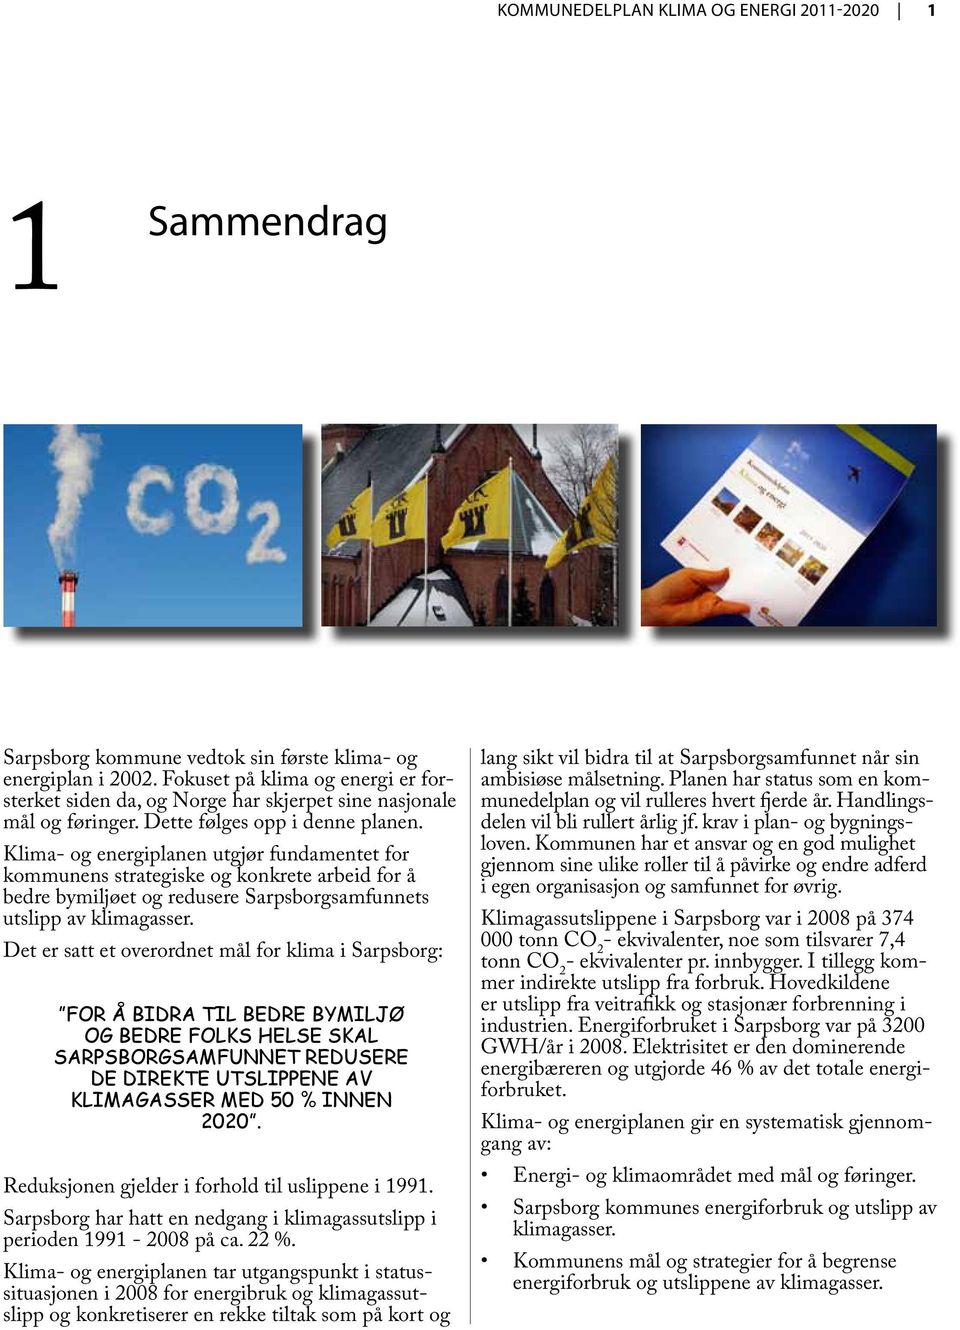 Klima- og energiplanen utgjør fundamentet for kommunens strategiske og konkrete arbeid for å bedre bymiljøet og redusere Sarpsborgsamfunnets utslipp av klimagasser.